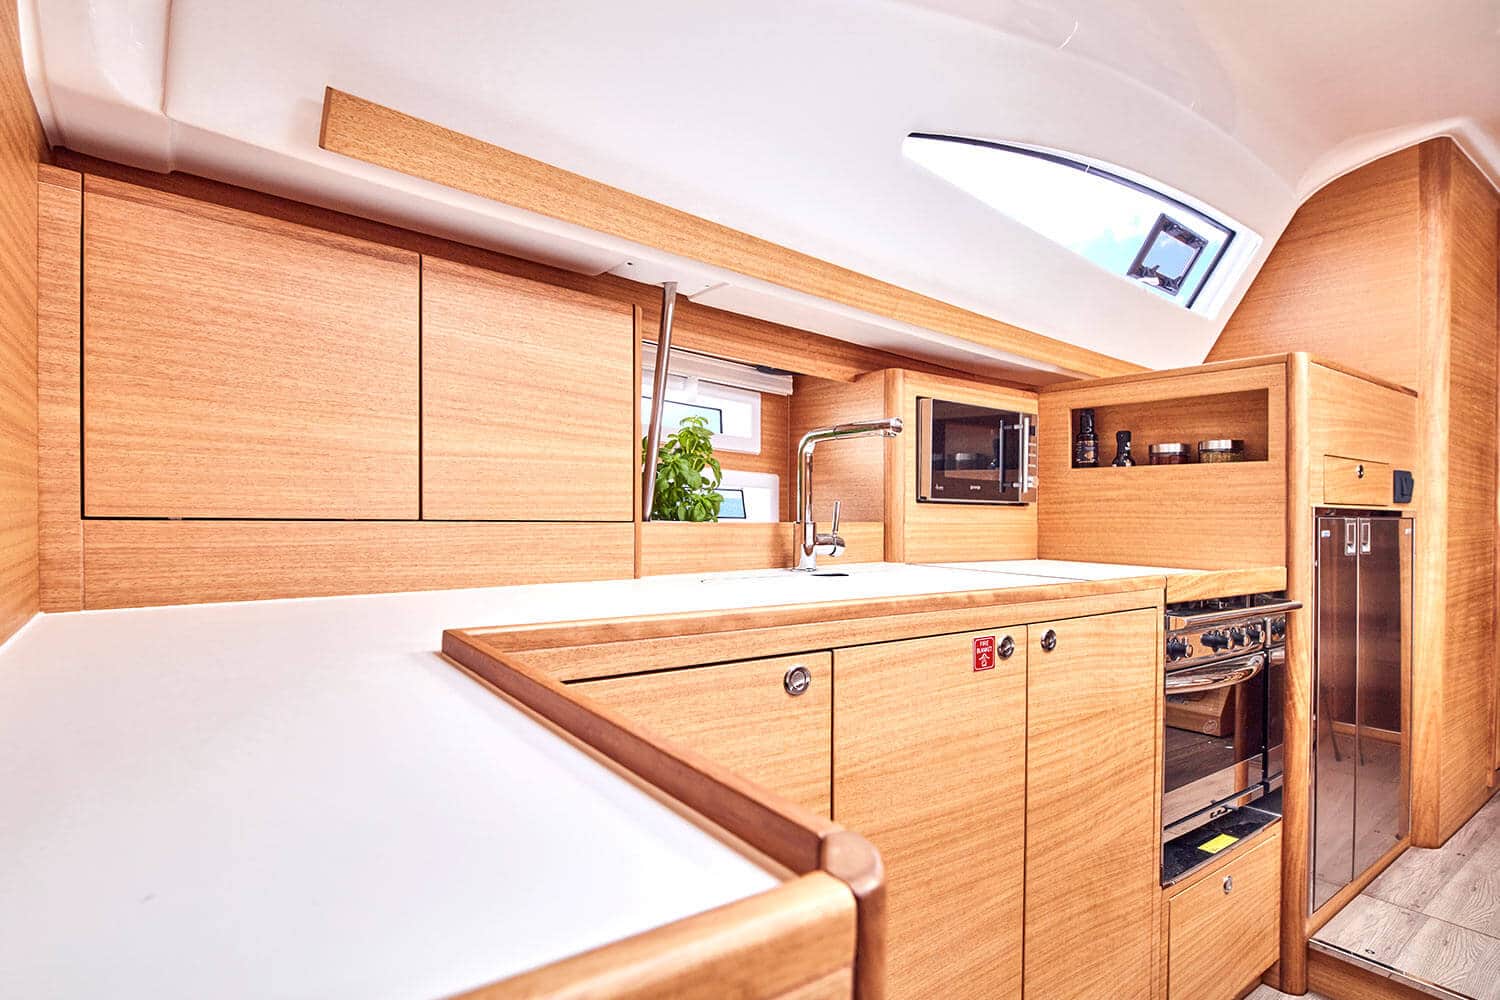 Moderne Yachtküche mit Holzschränken, weißen Arbeitsplatten, Edelstahlgeräten und Oberlicht. Der Raum ist kompakt und für eine Segelyacht effizient organisiert.